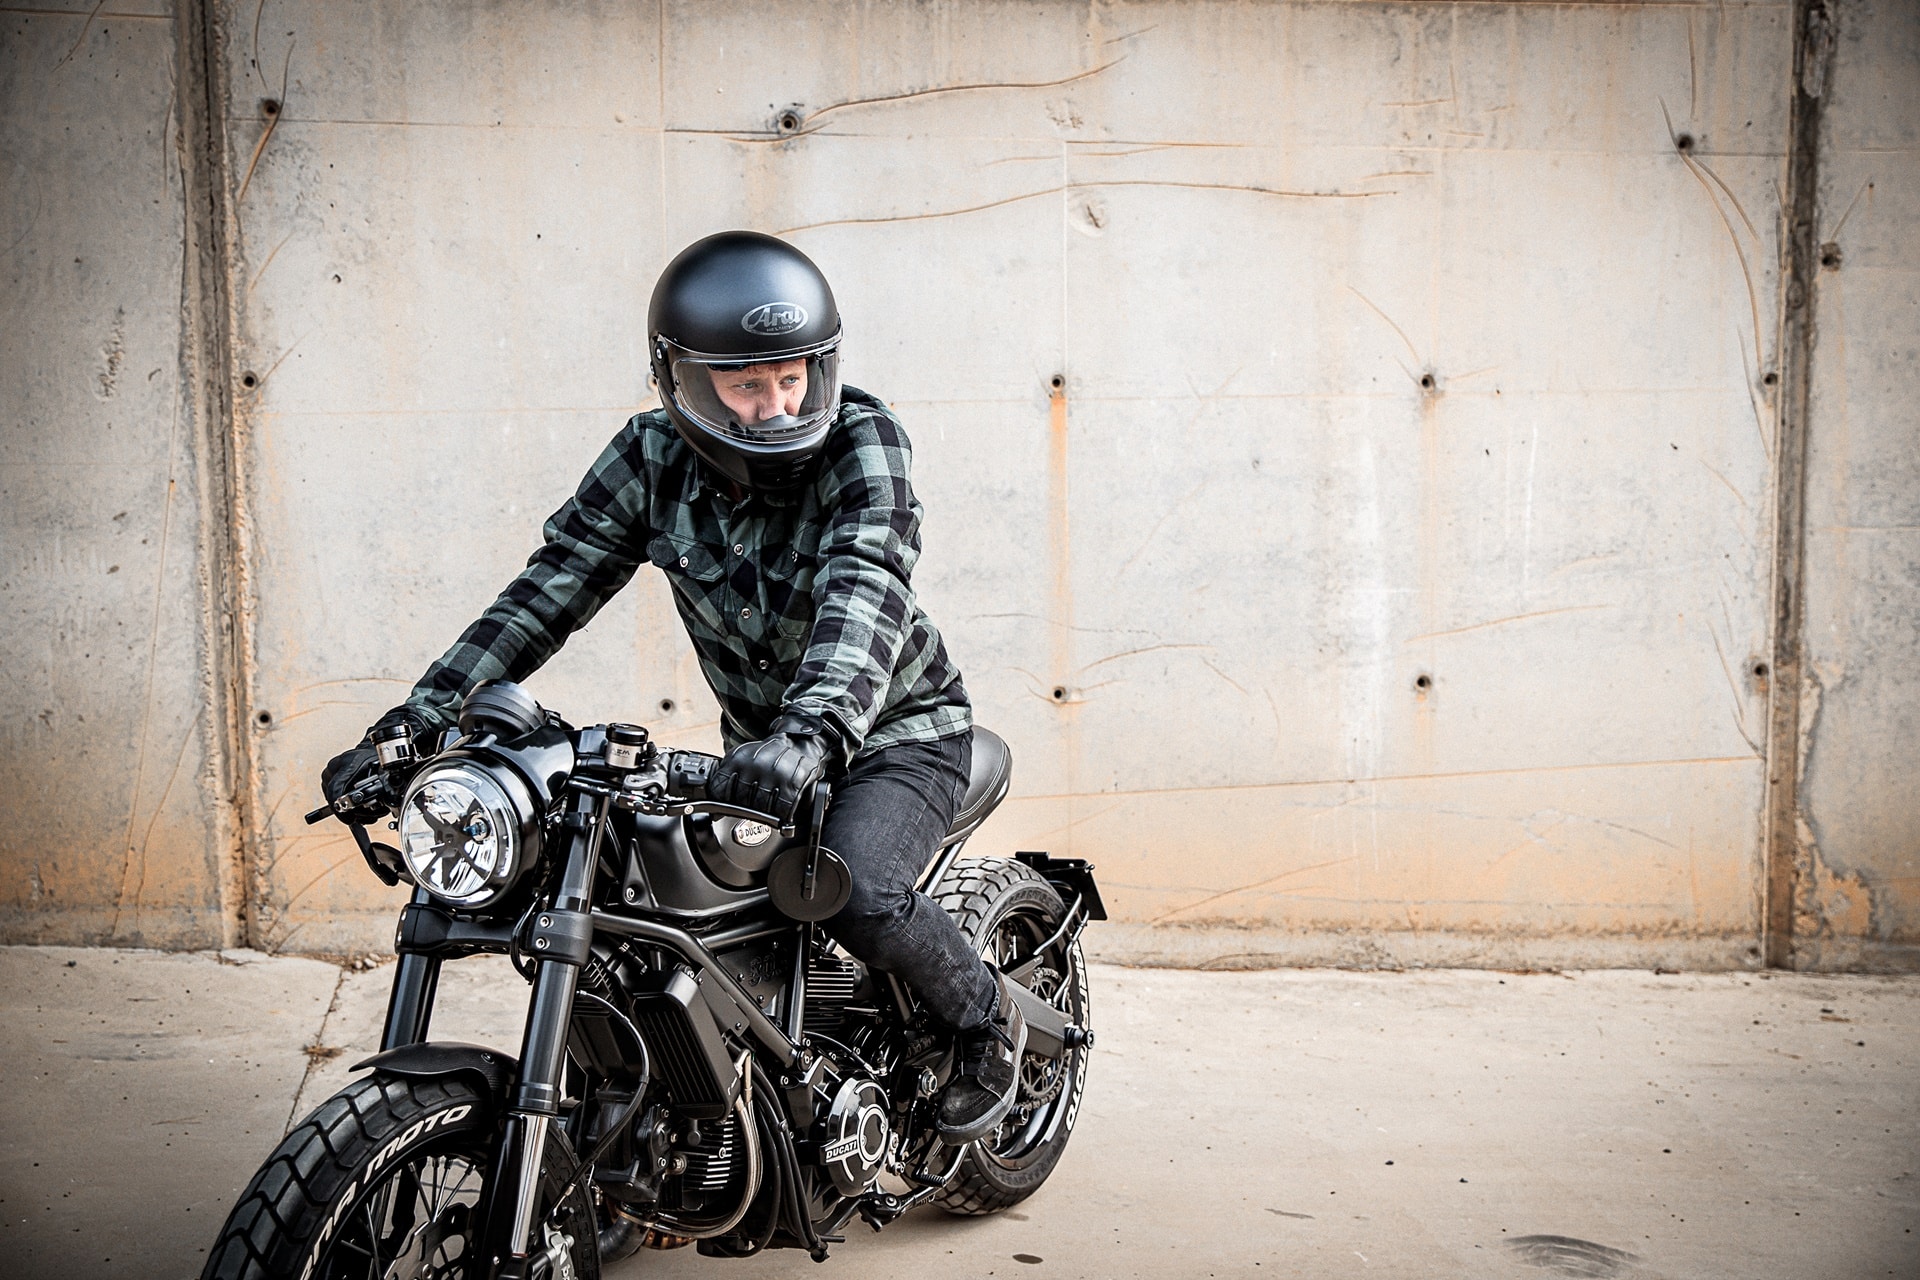 Accesorios Highsider: Experiencia e innovación para amantes de la moto